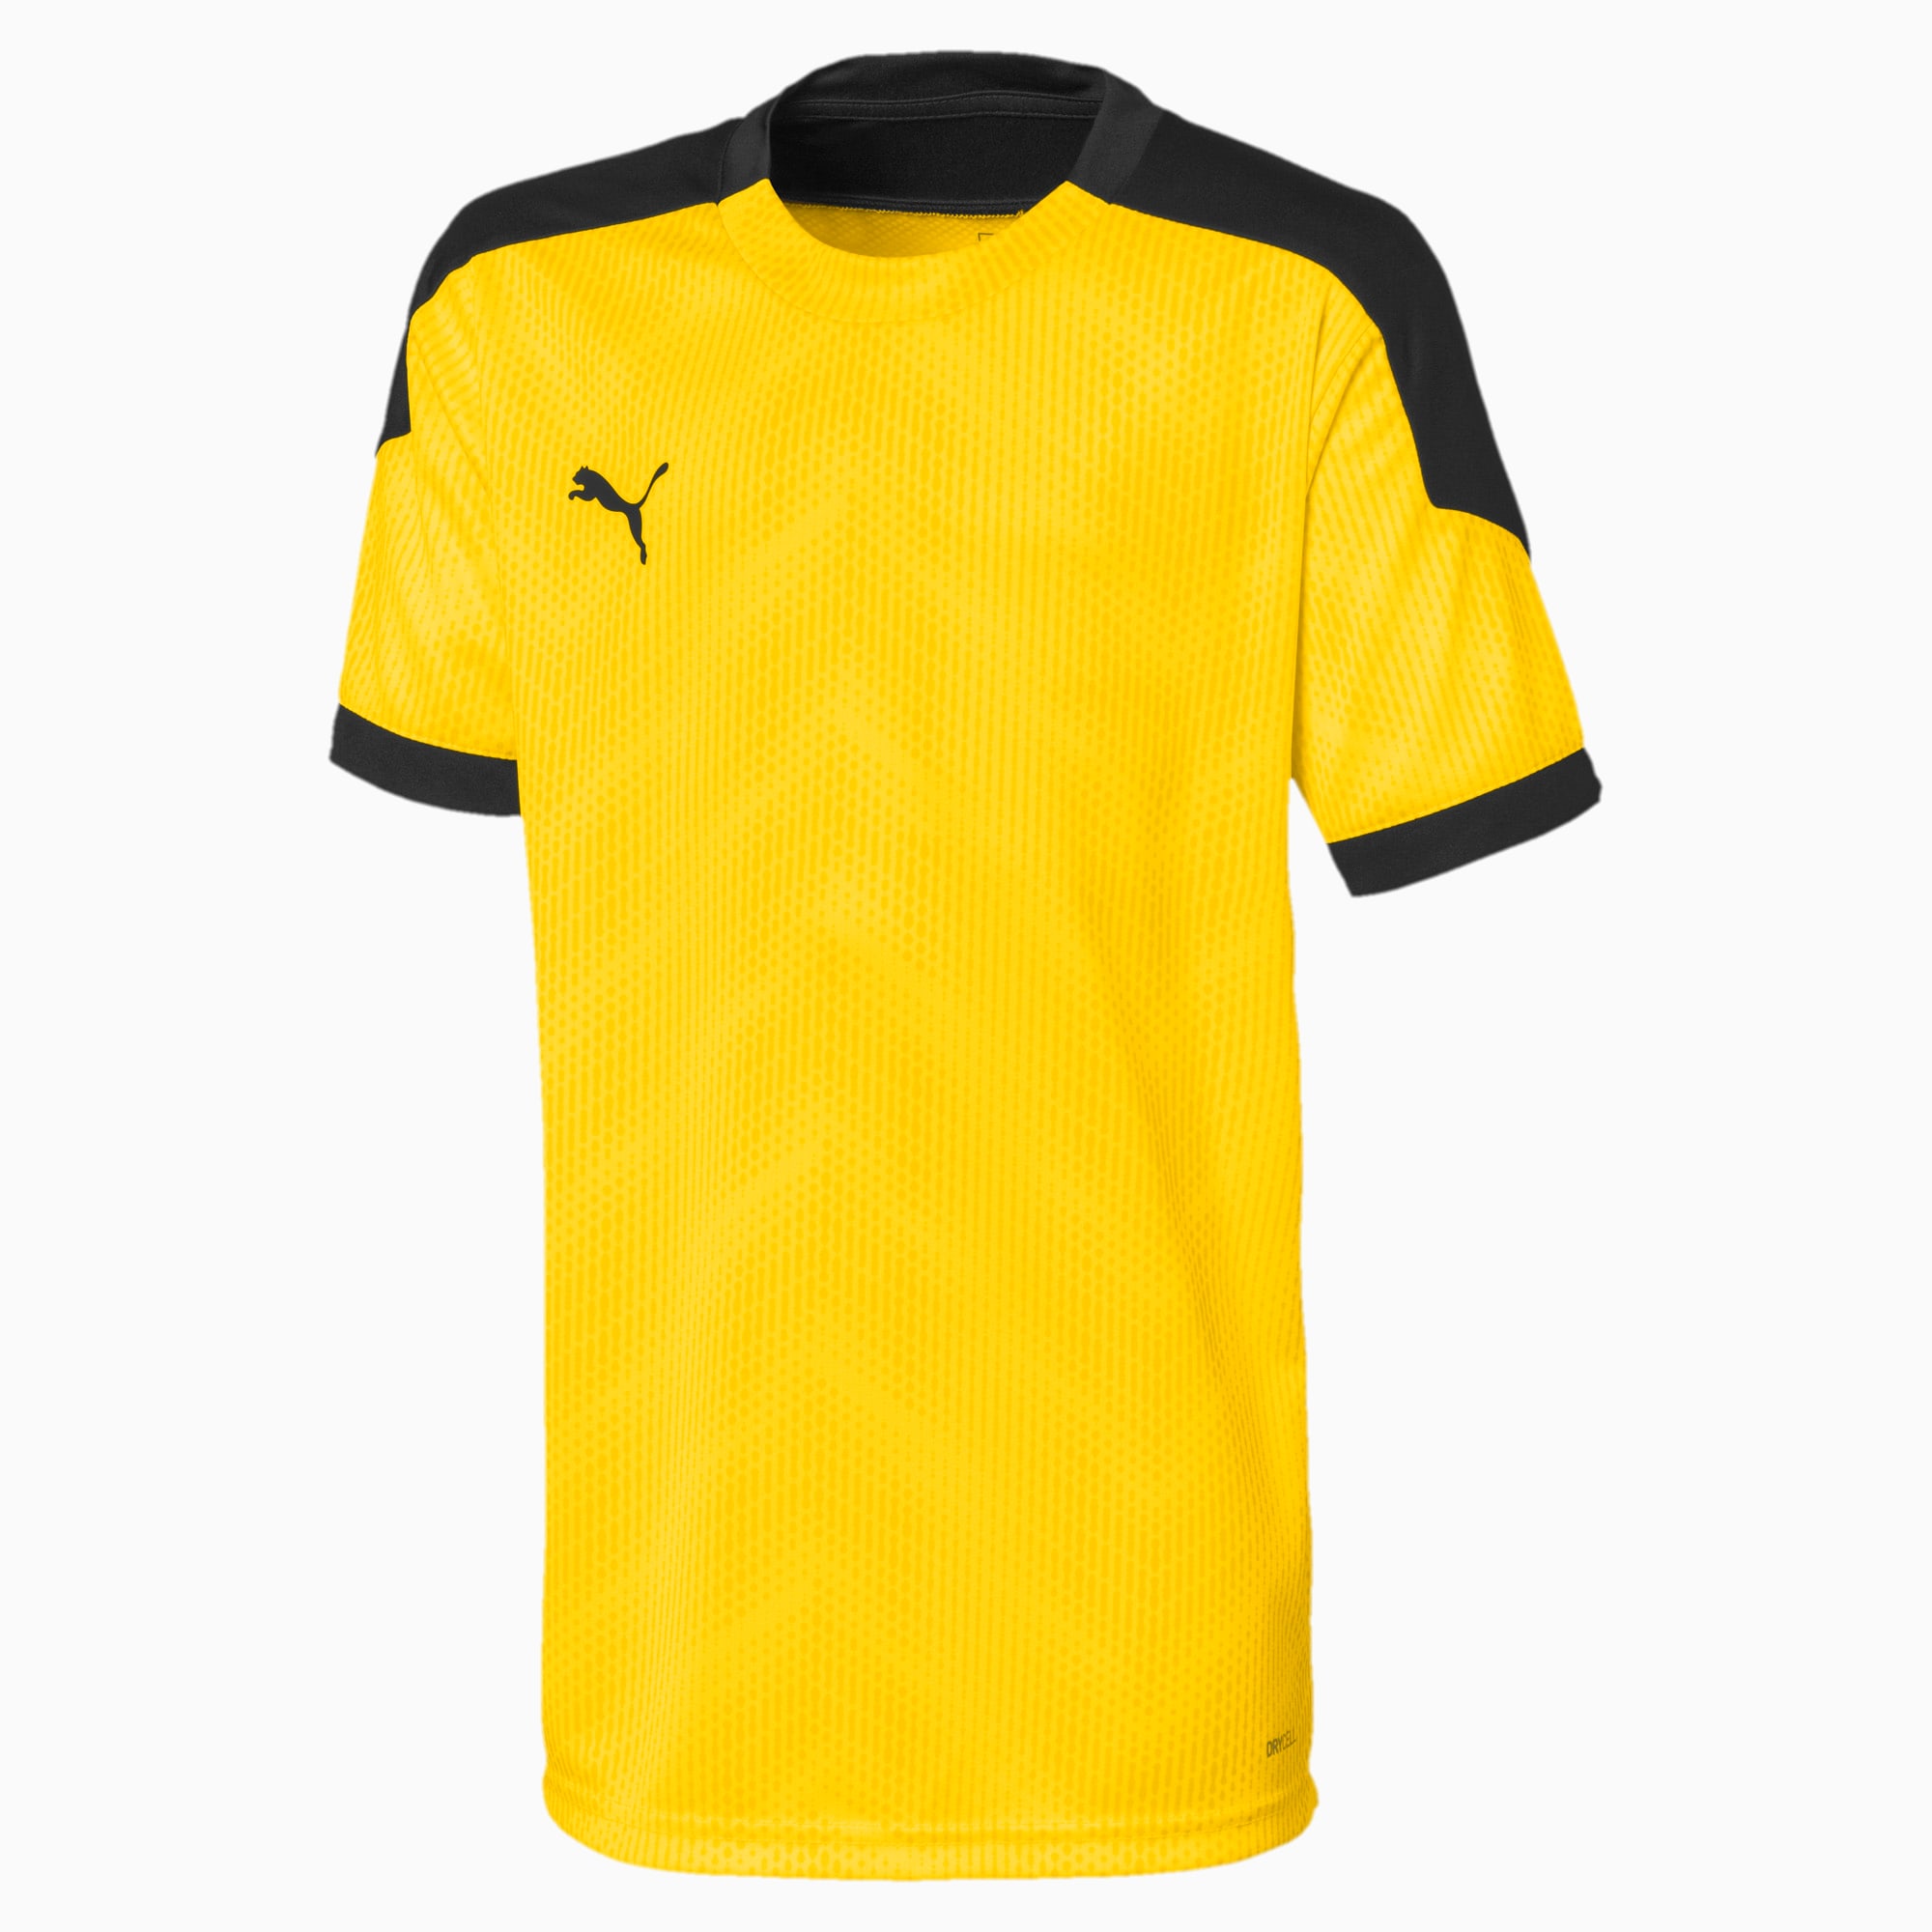 Image of PUMA ftblNXT Graphic Kinder Fußball T-Shirt | Mit Aucun | Gelb/Schwarz | Größe: 110